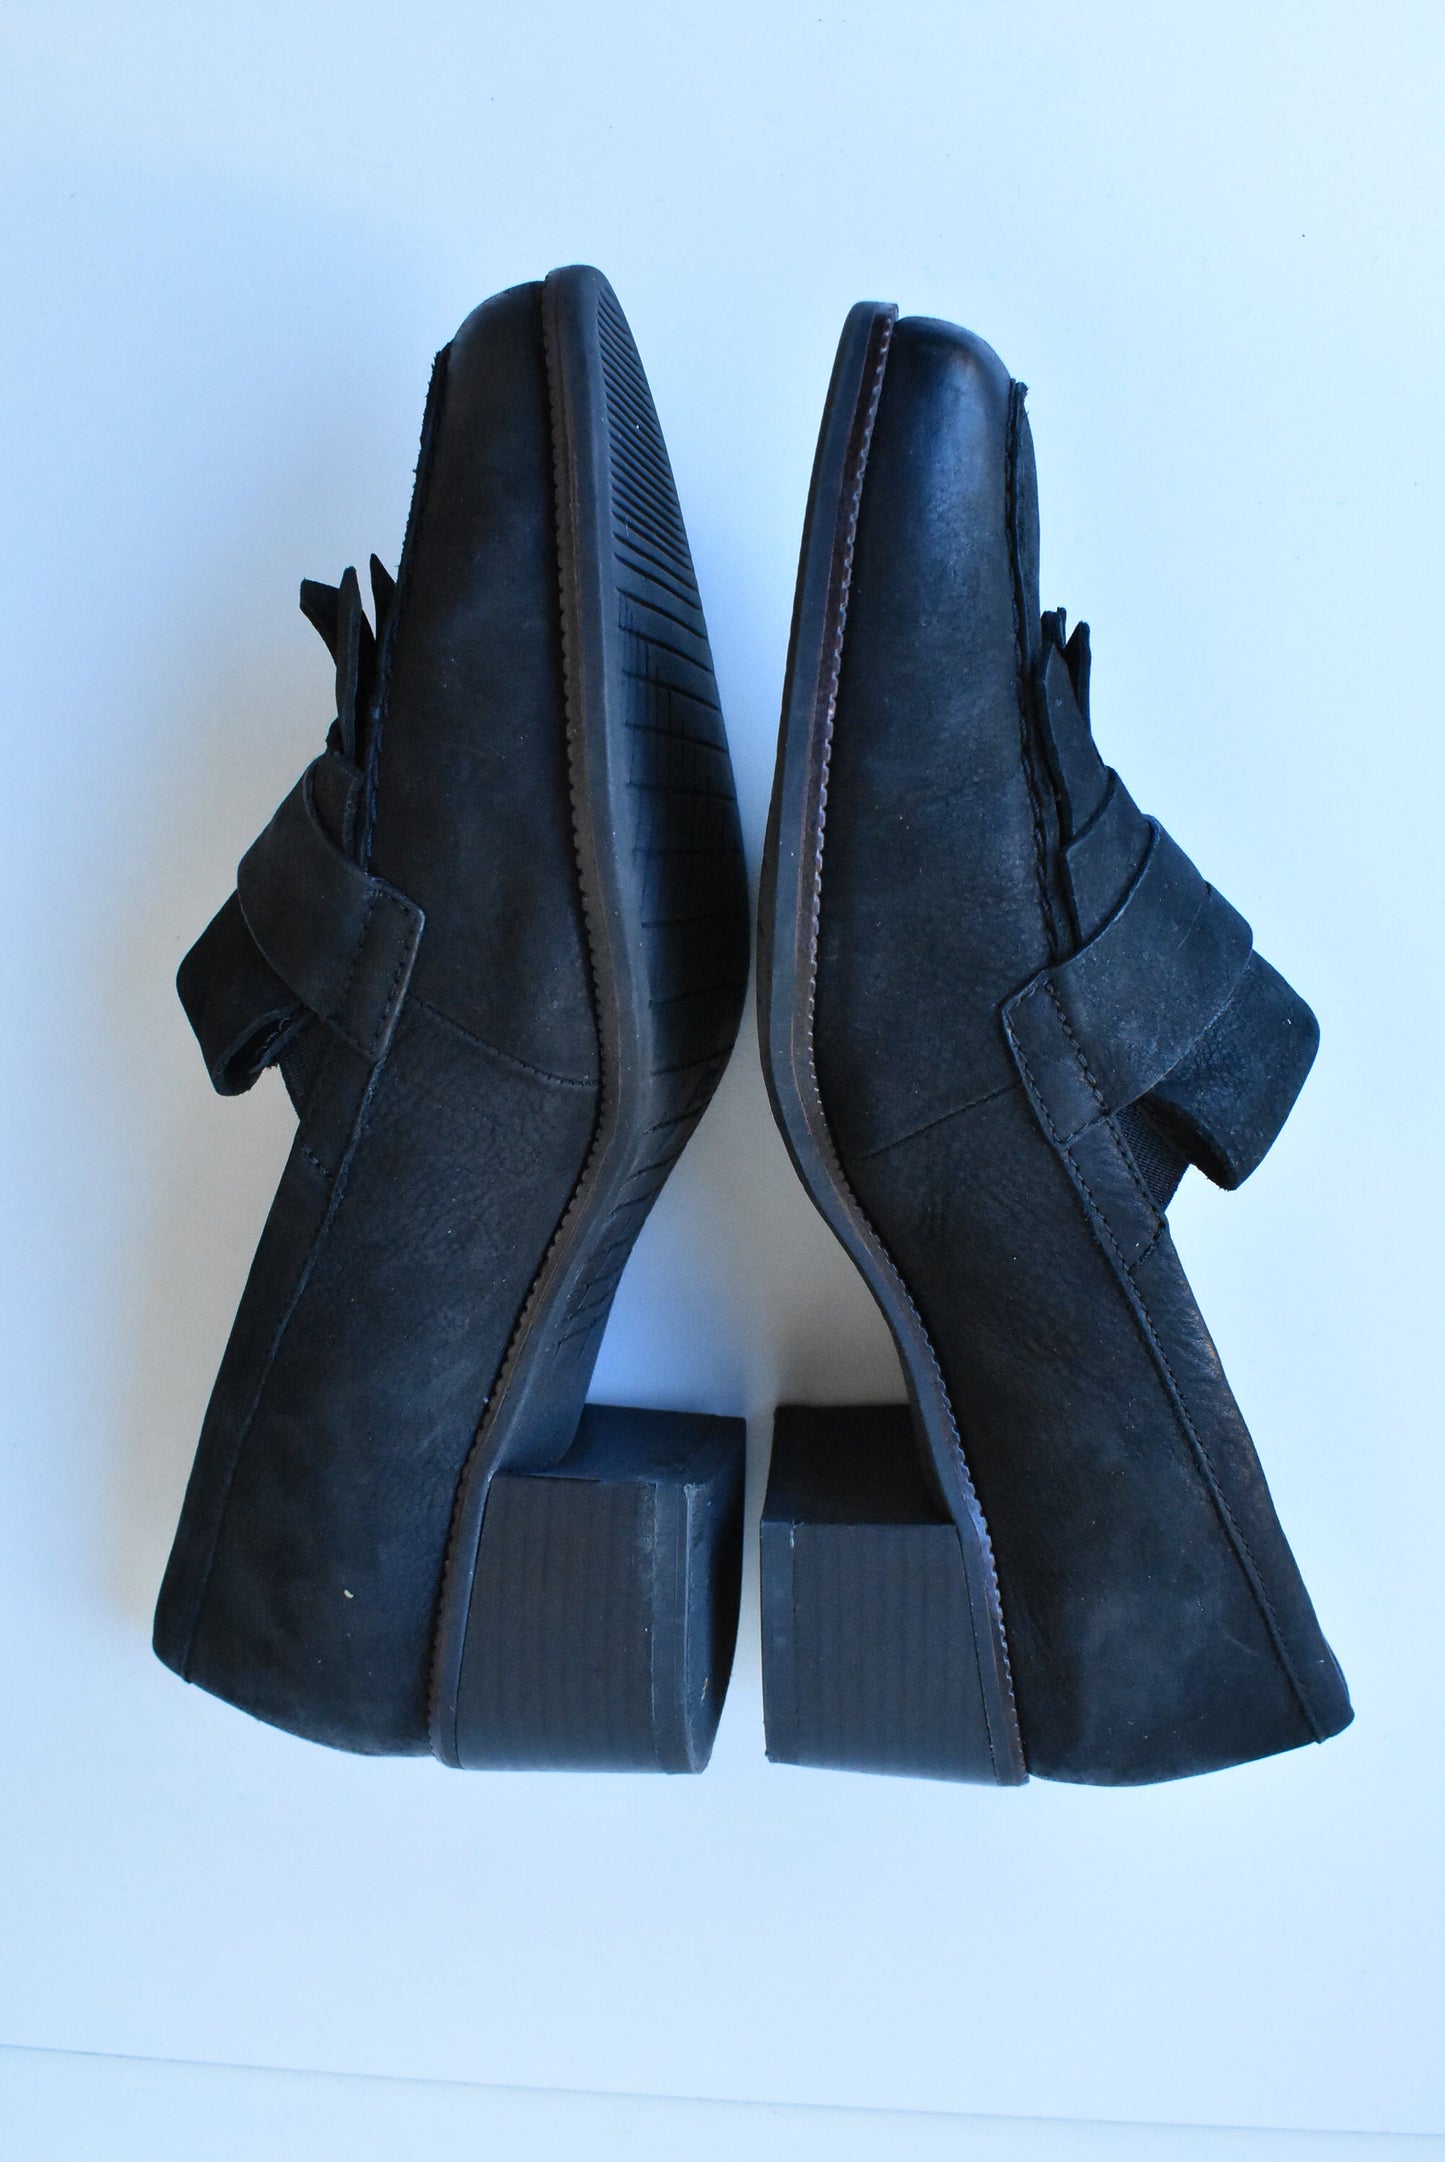 Pulp Noir black leather shoes, size 39